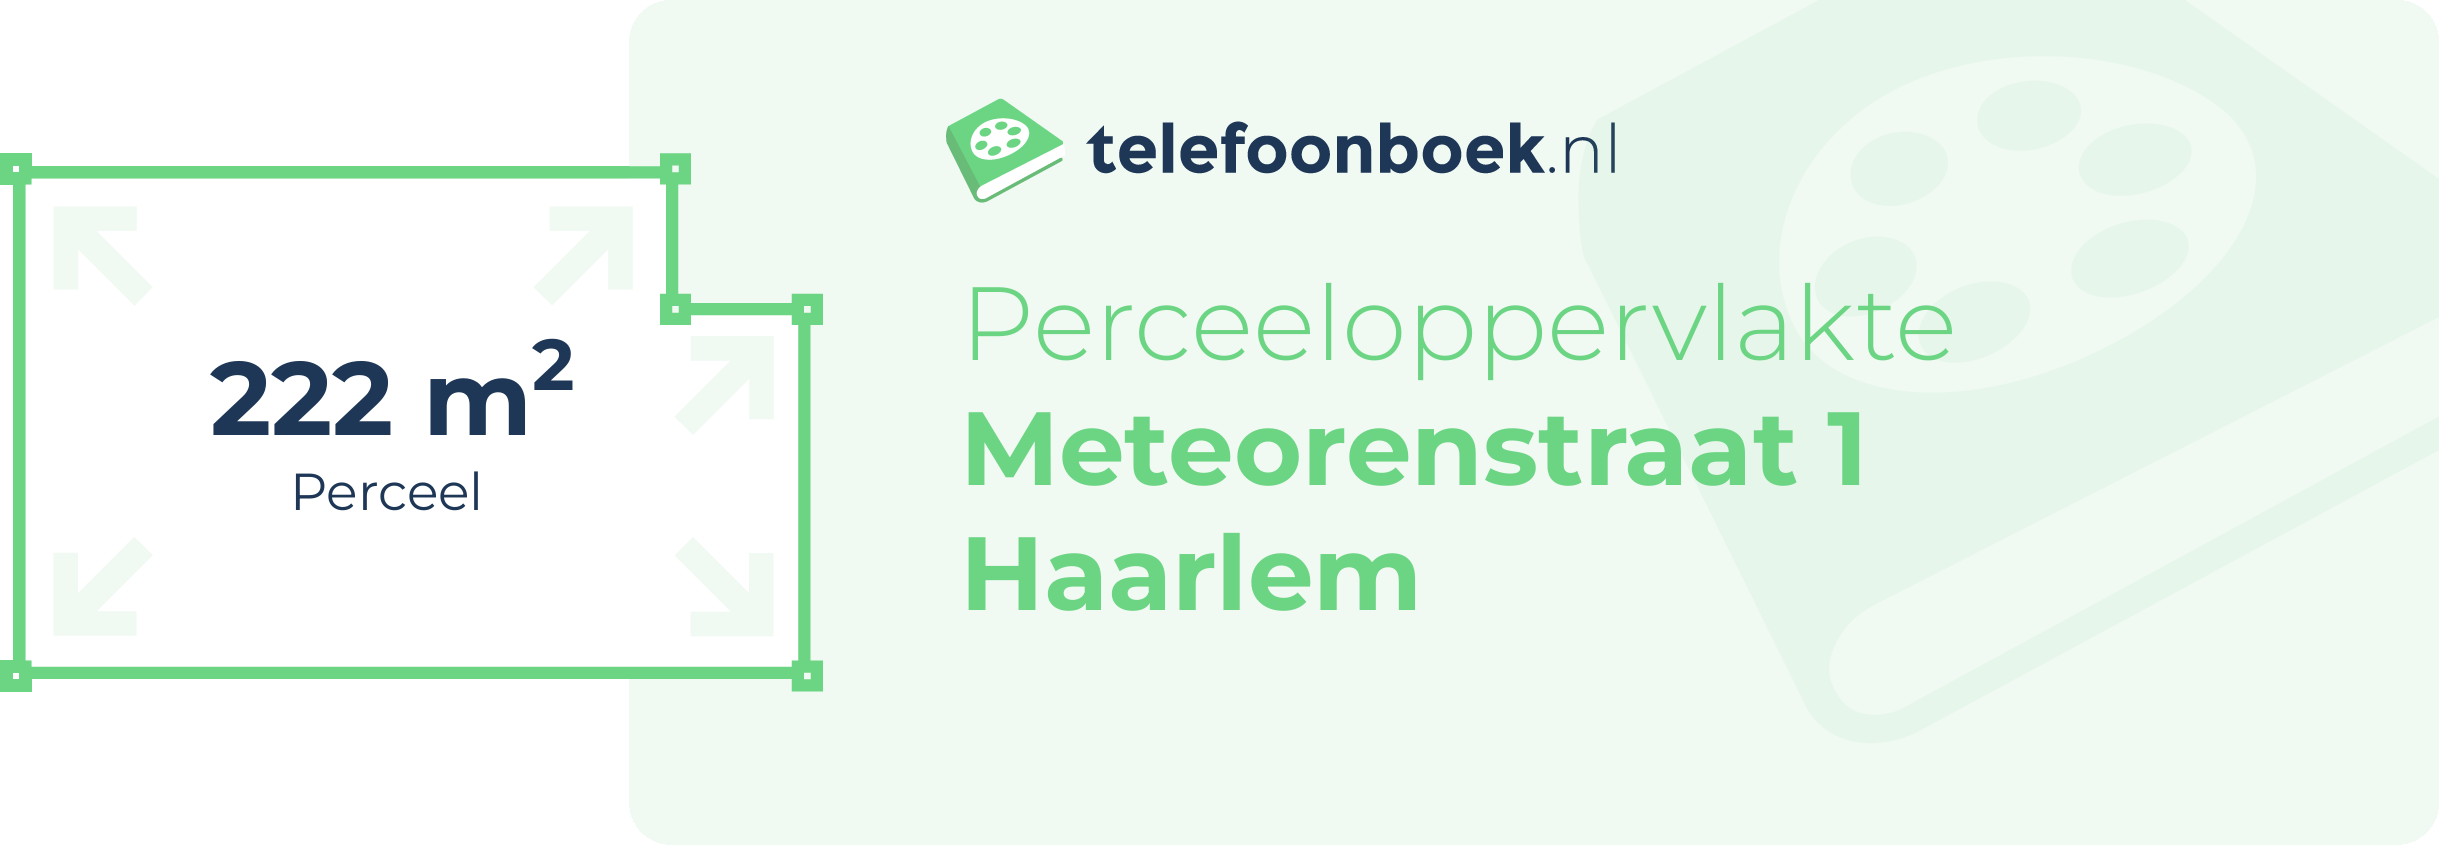 Perceeloppervlakte Meteorenstraat 1 Haarlem